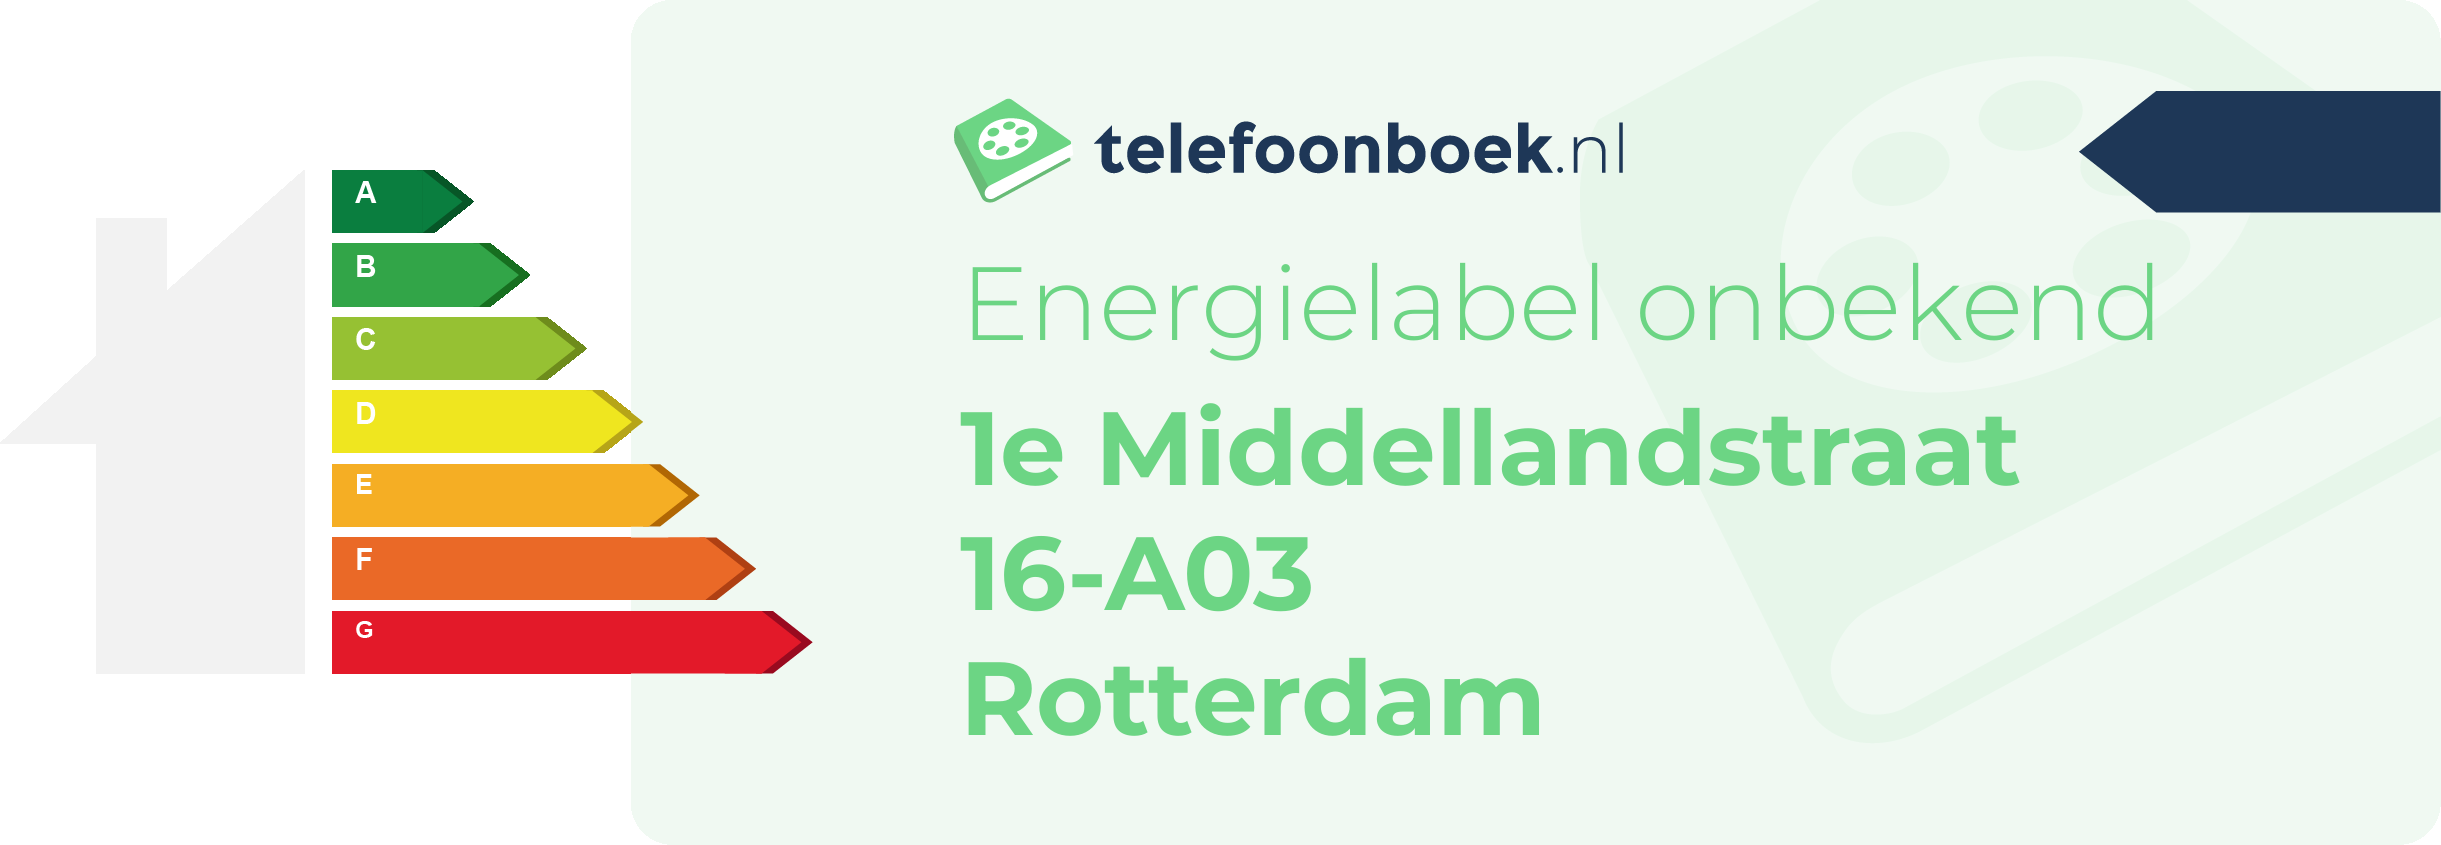 Energielabel 1e Middellandstraat 16-A03 Rotterdam